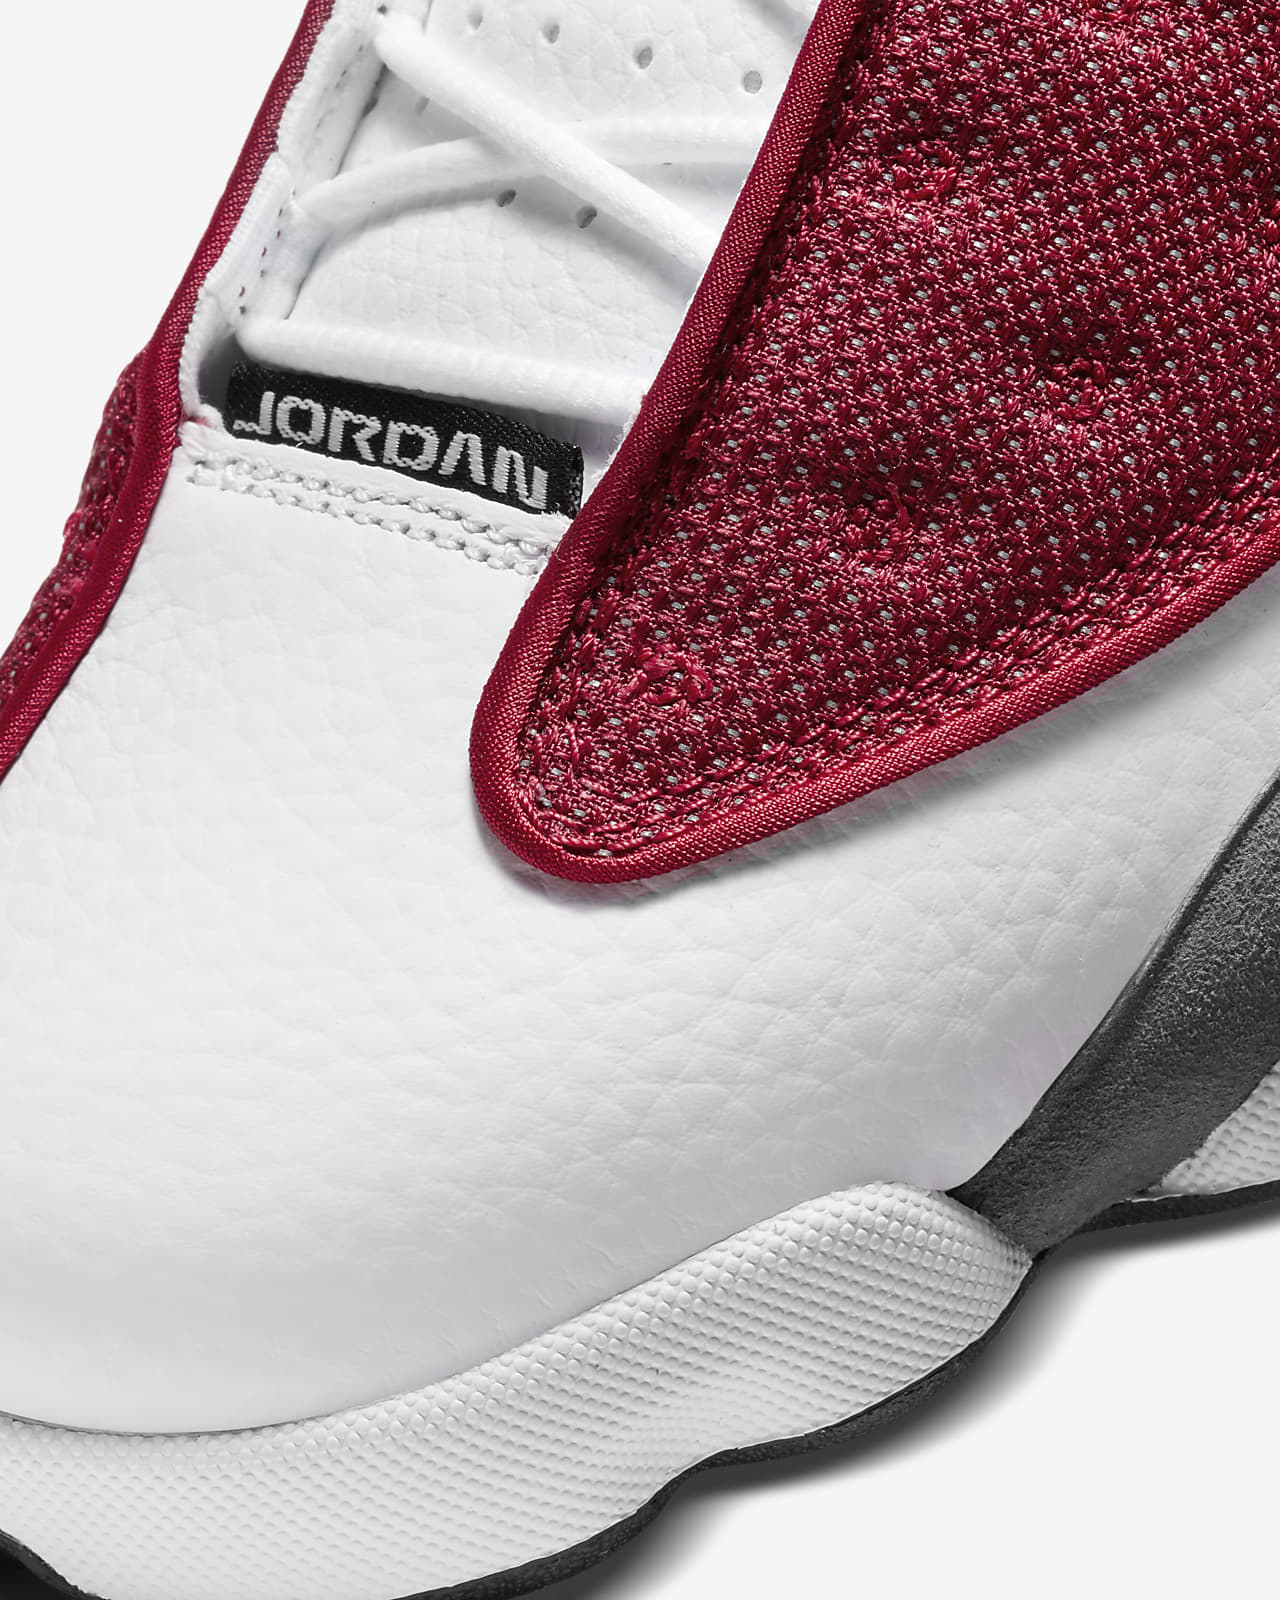 Air Jordan 13